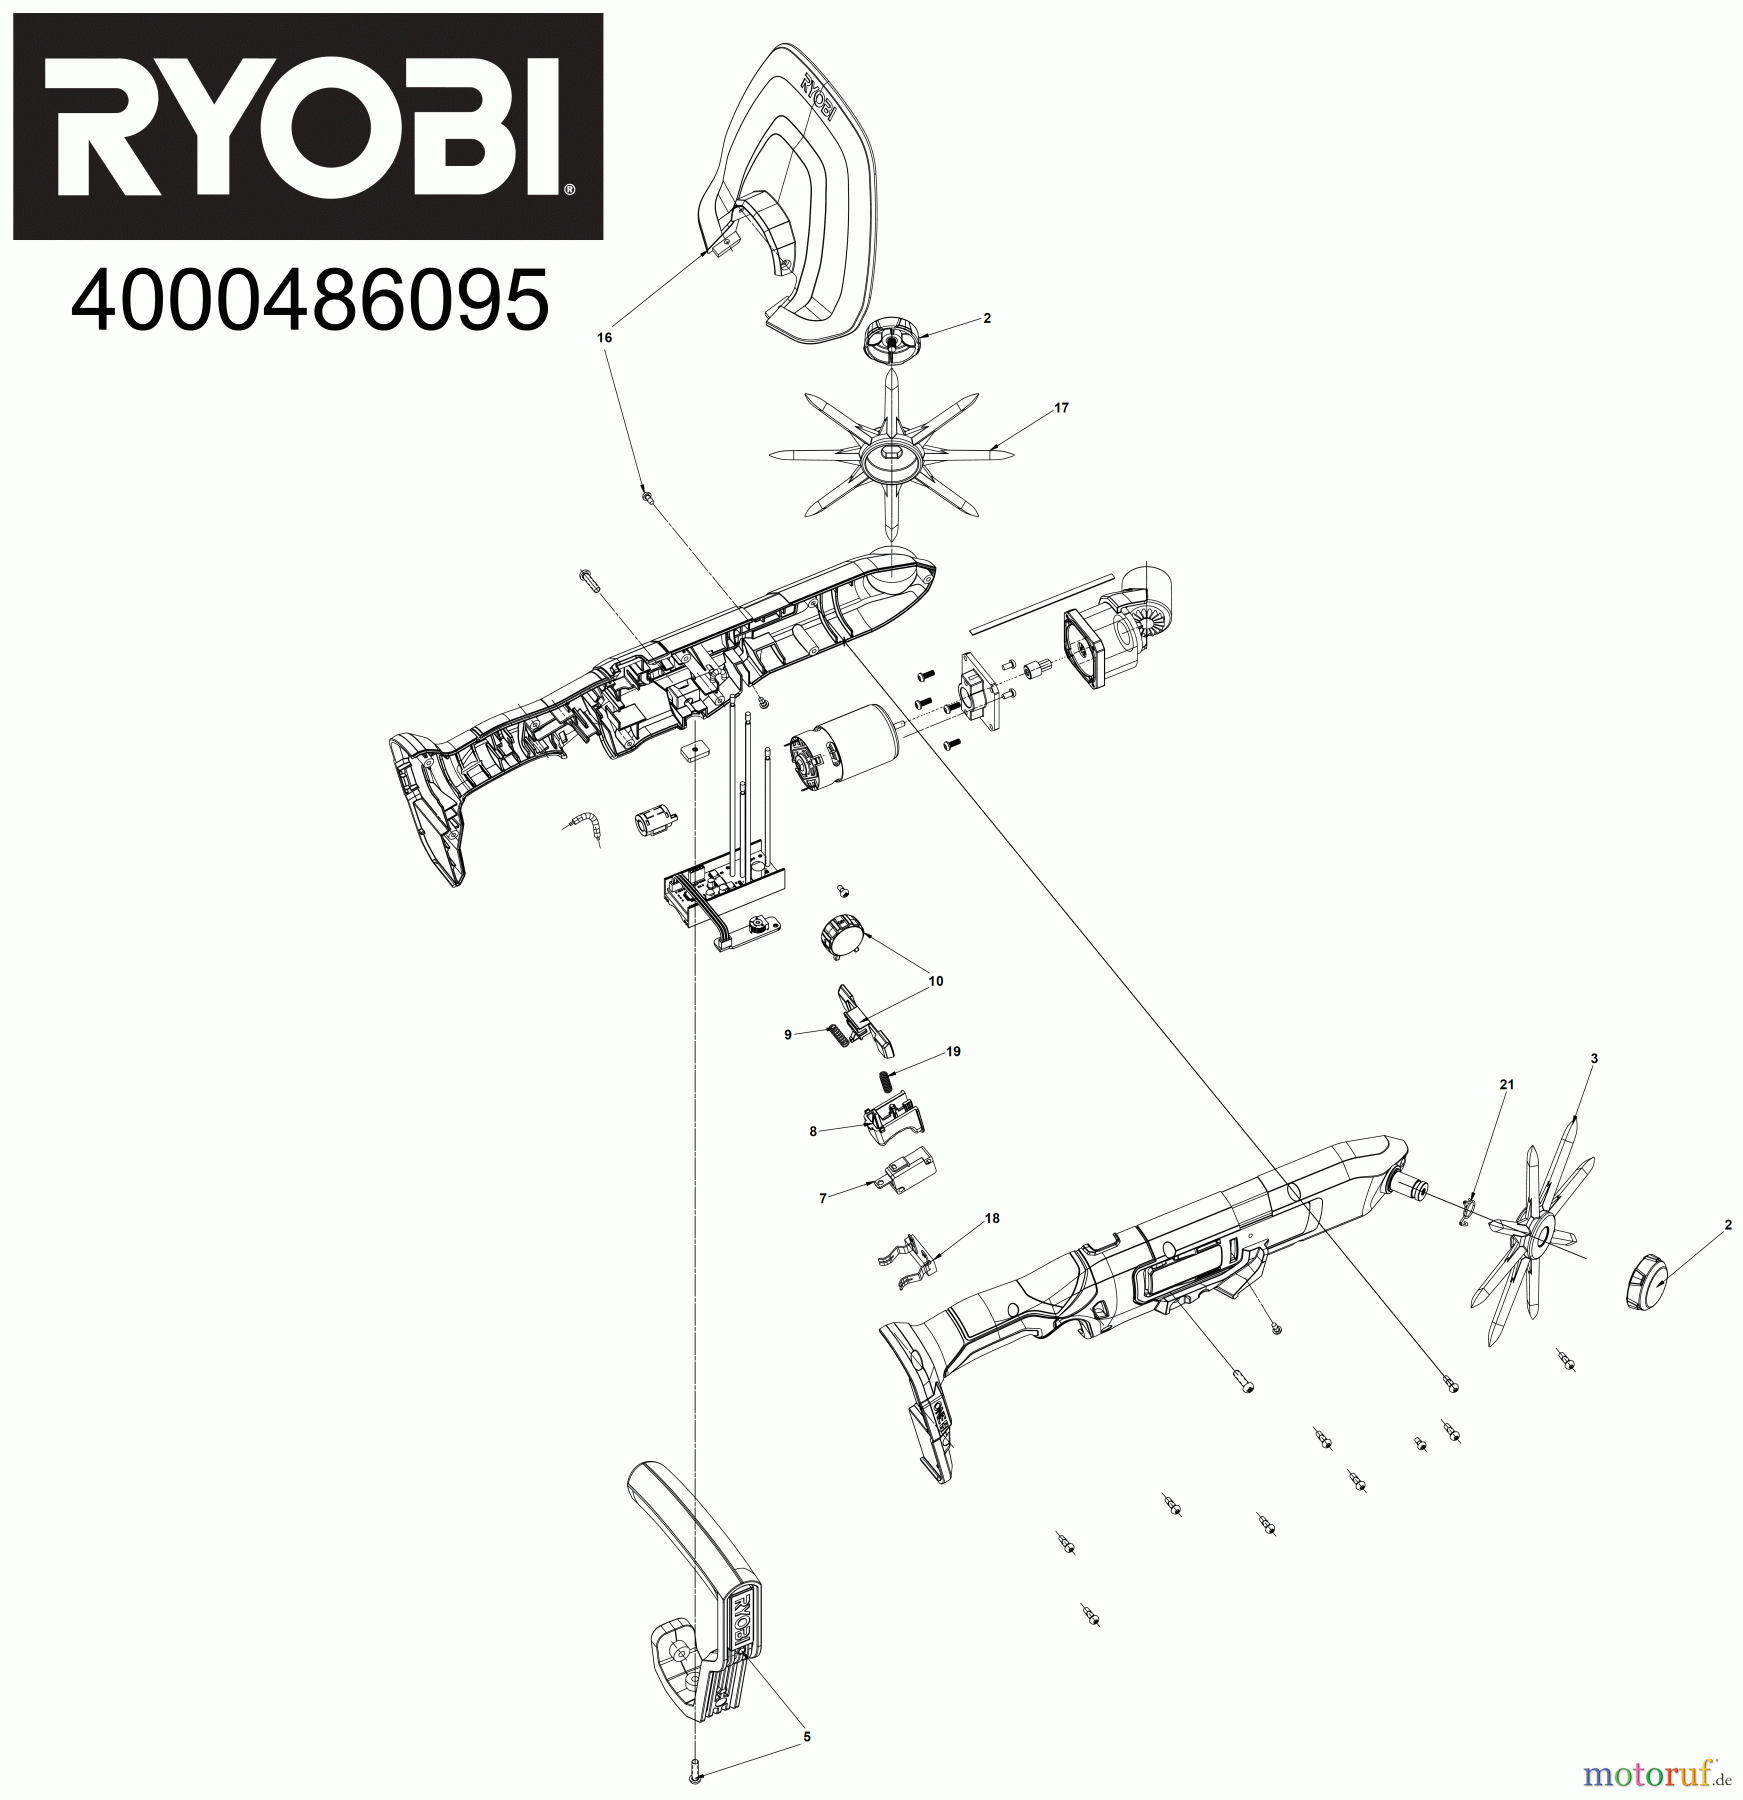  Ryobi Bodenhacken Kultivator RY18HCA 18 V ONE+ Akku-Kompakt-Kultivator, Arbeitstiefe 5 cm Seite 1